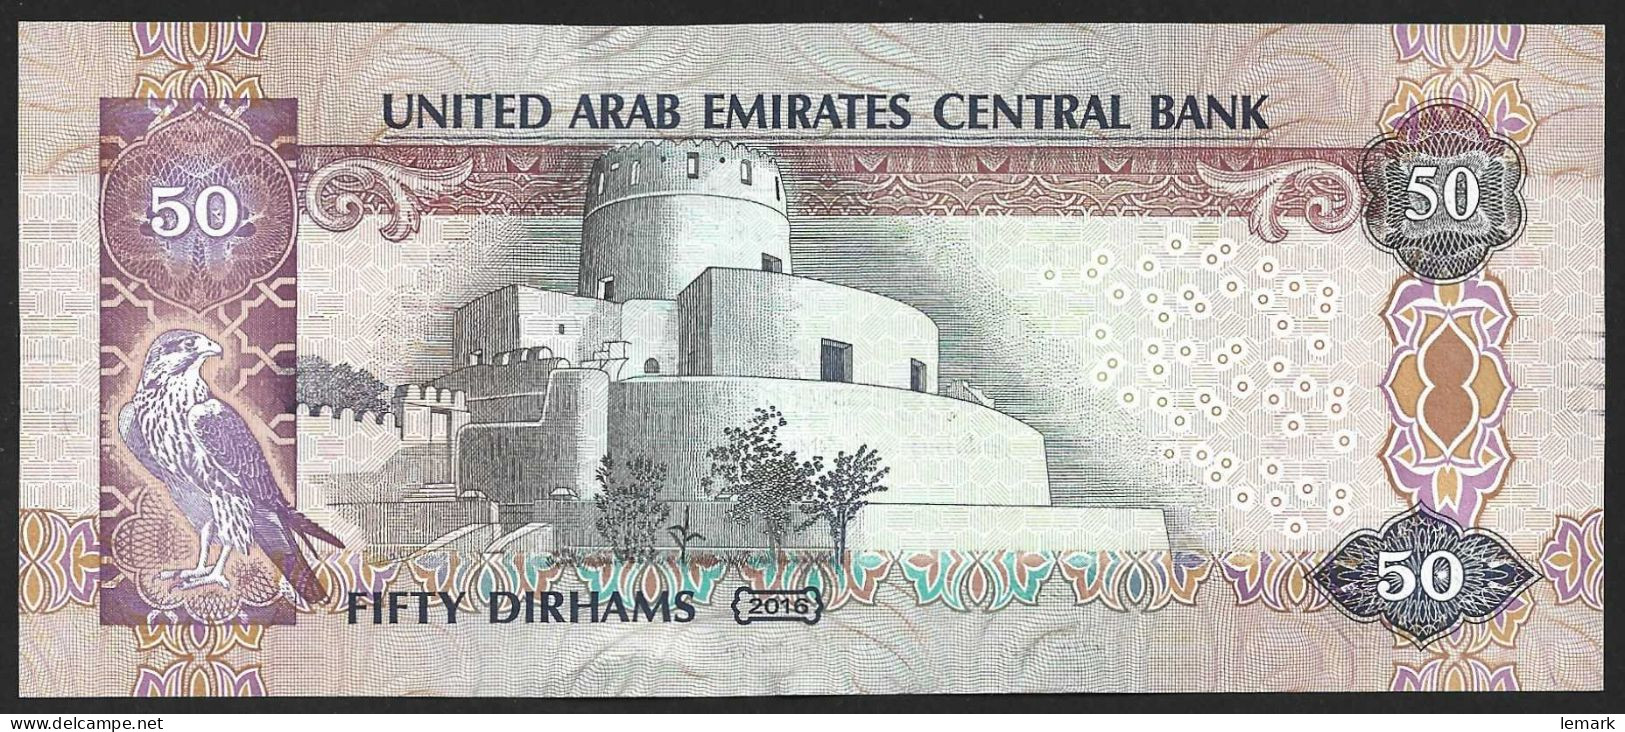 United Arab Emirates 50 Dirhams 2016 P29f AUNC - United Arab Emirates